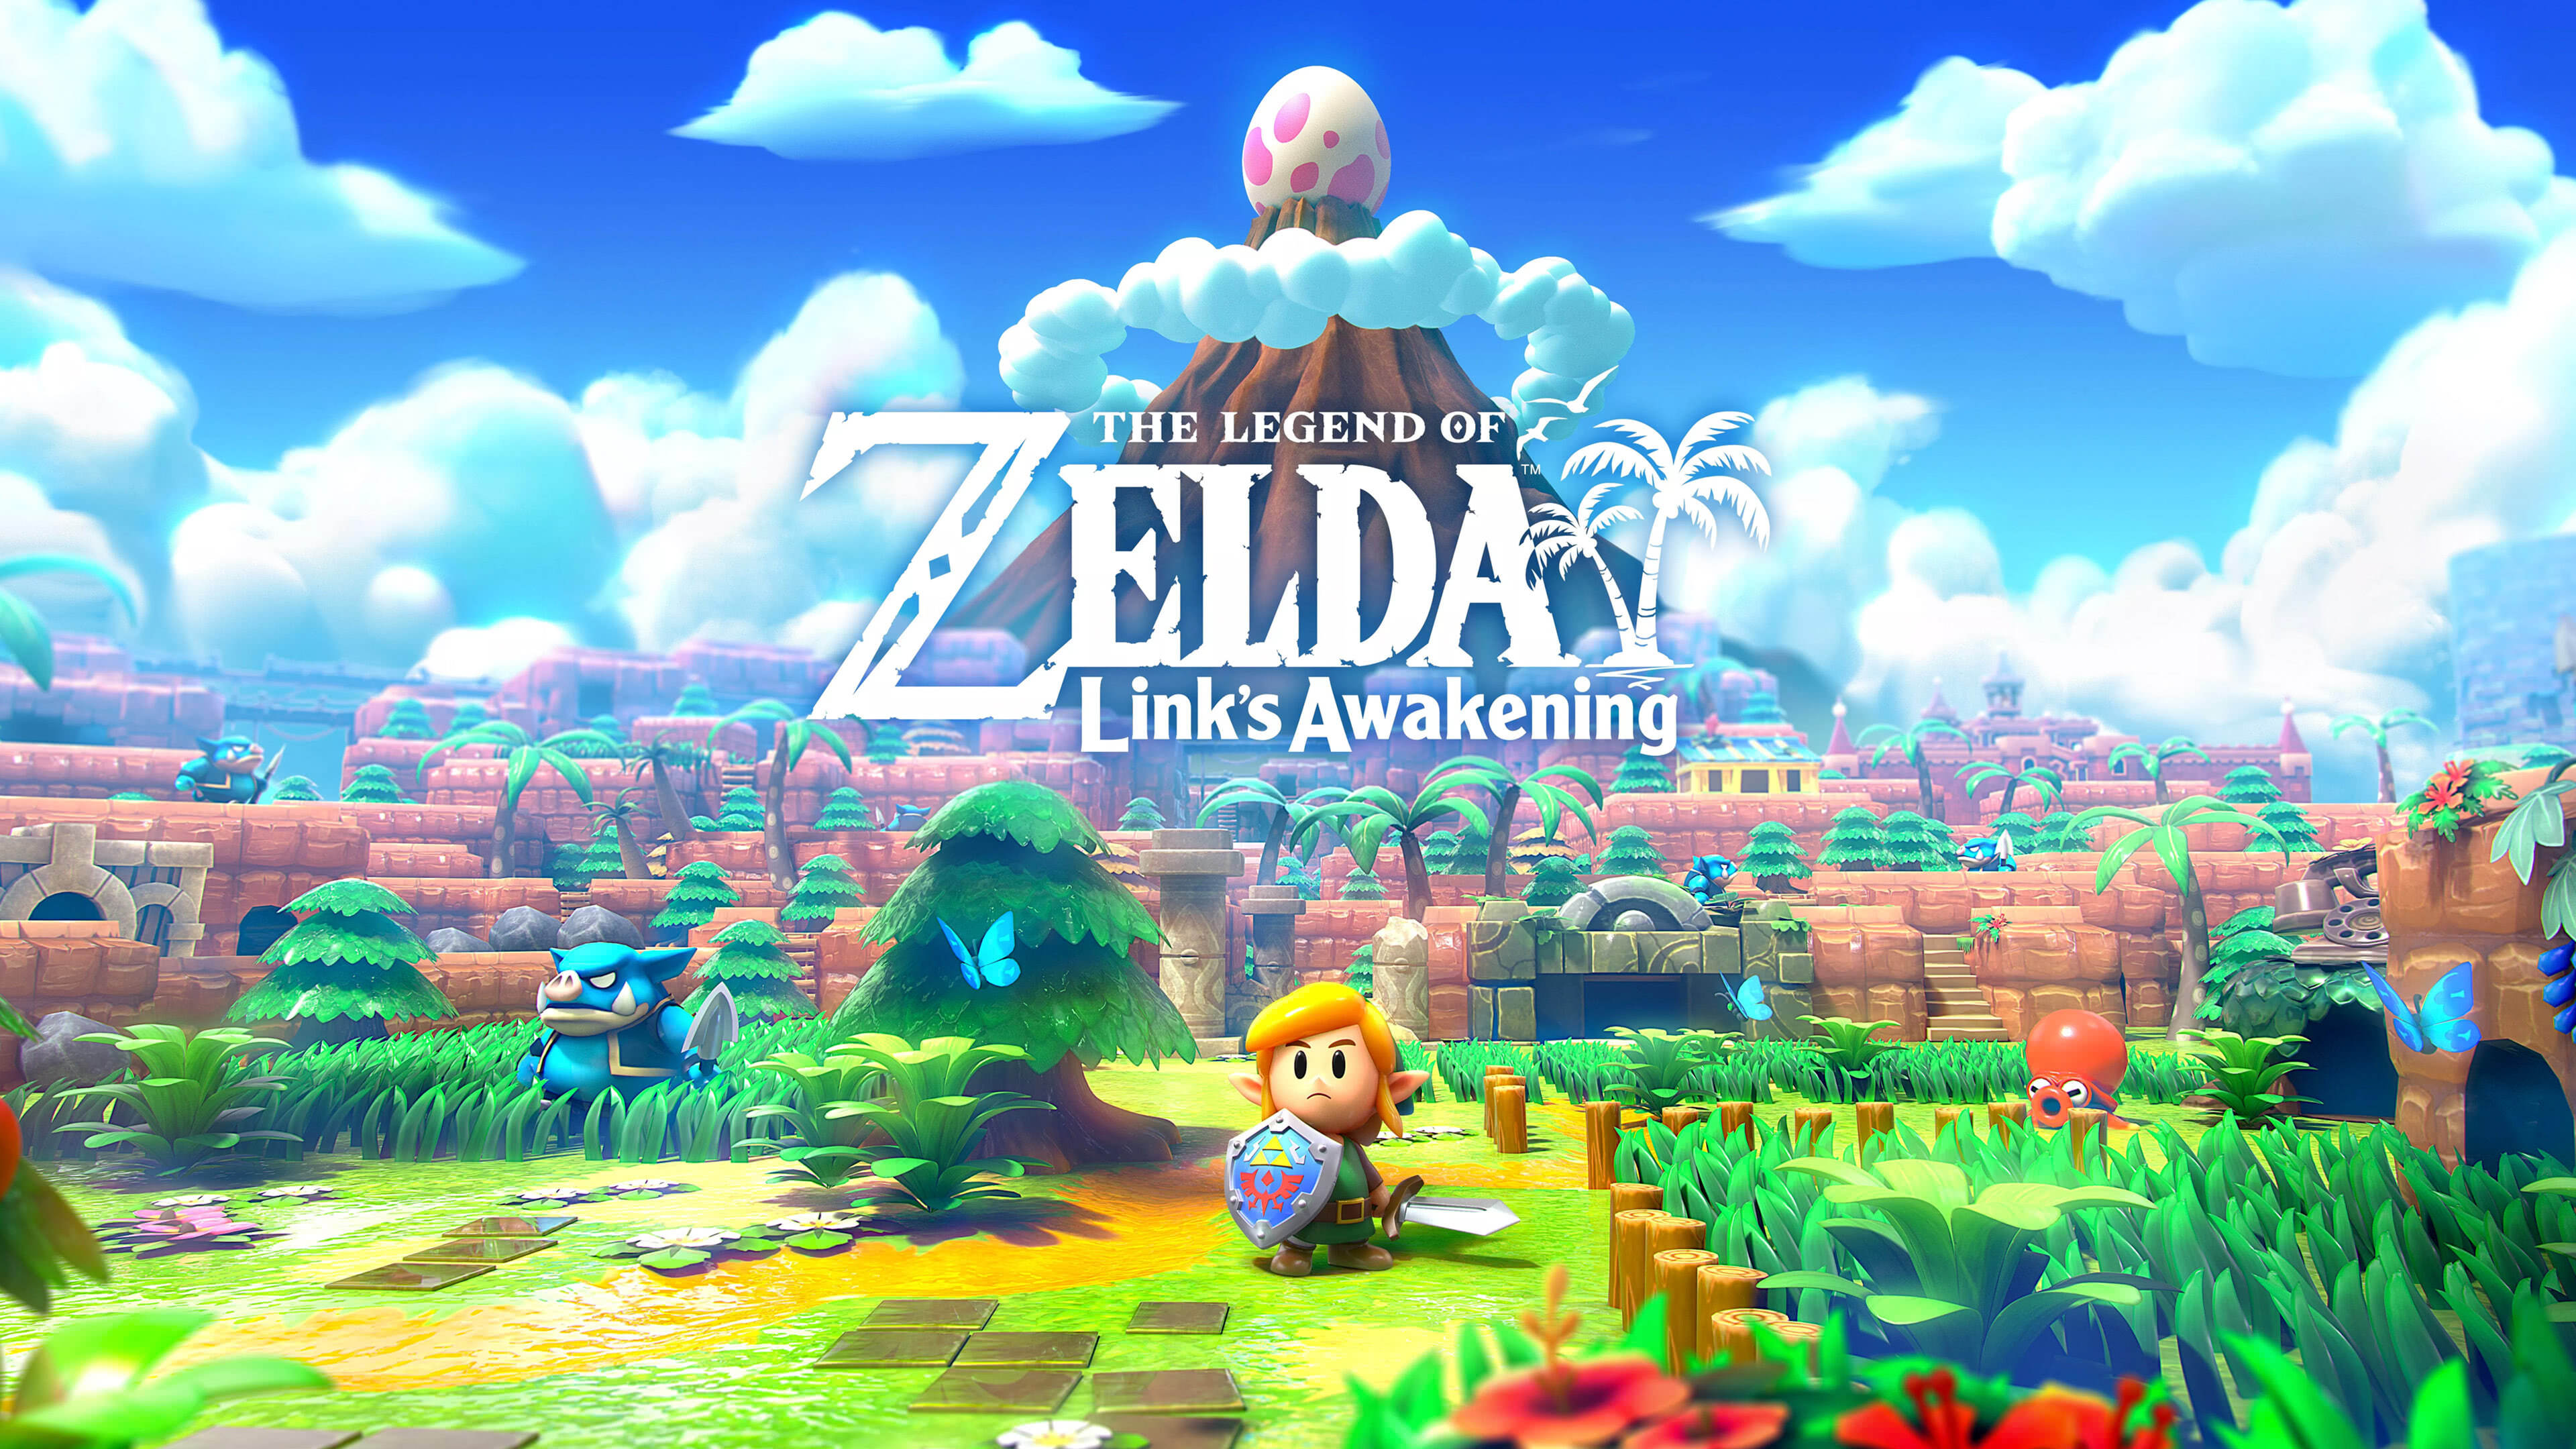 Zelda Links Awakening Cover UHD 4K Wallpaper | Pixelz